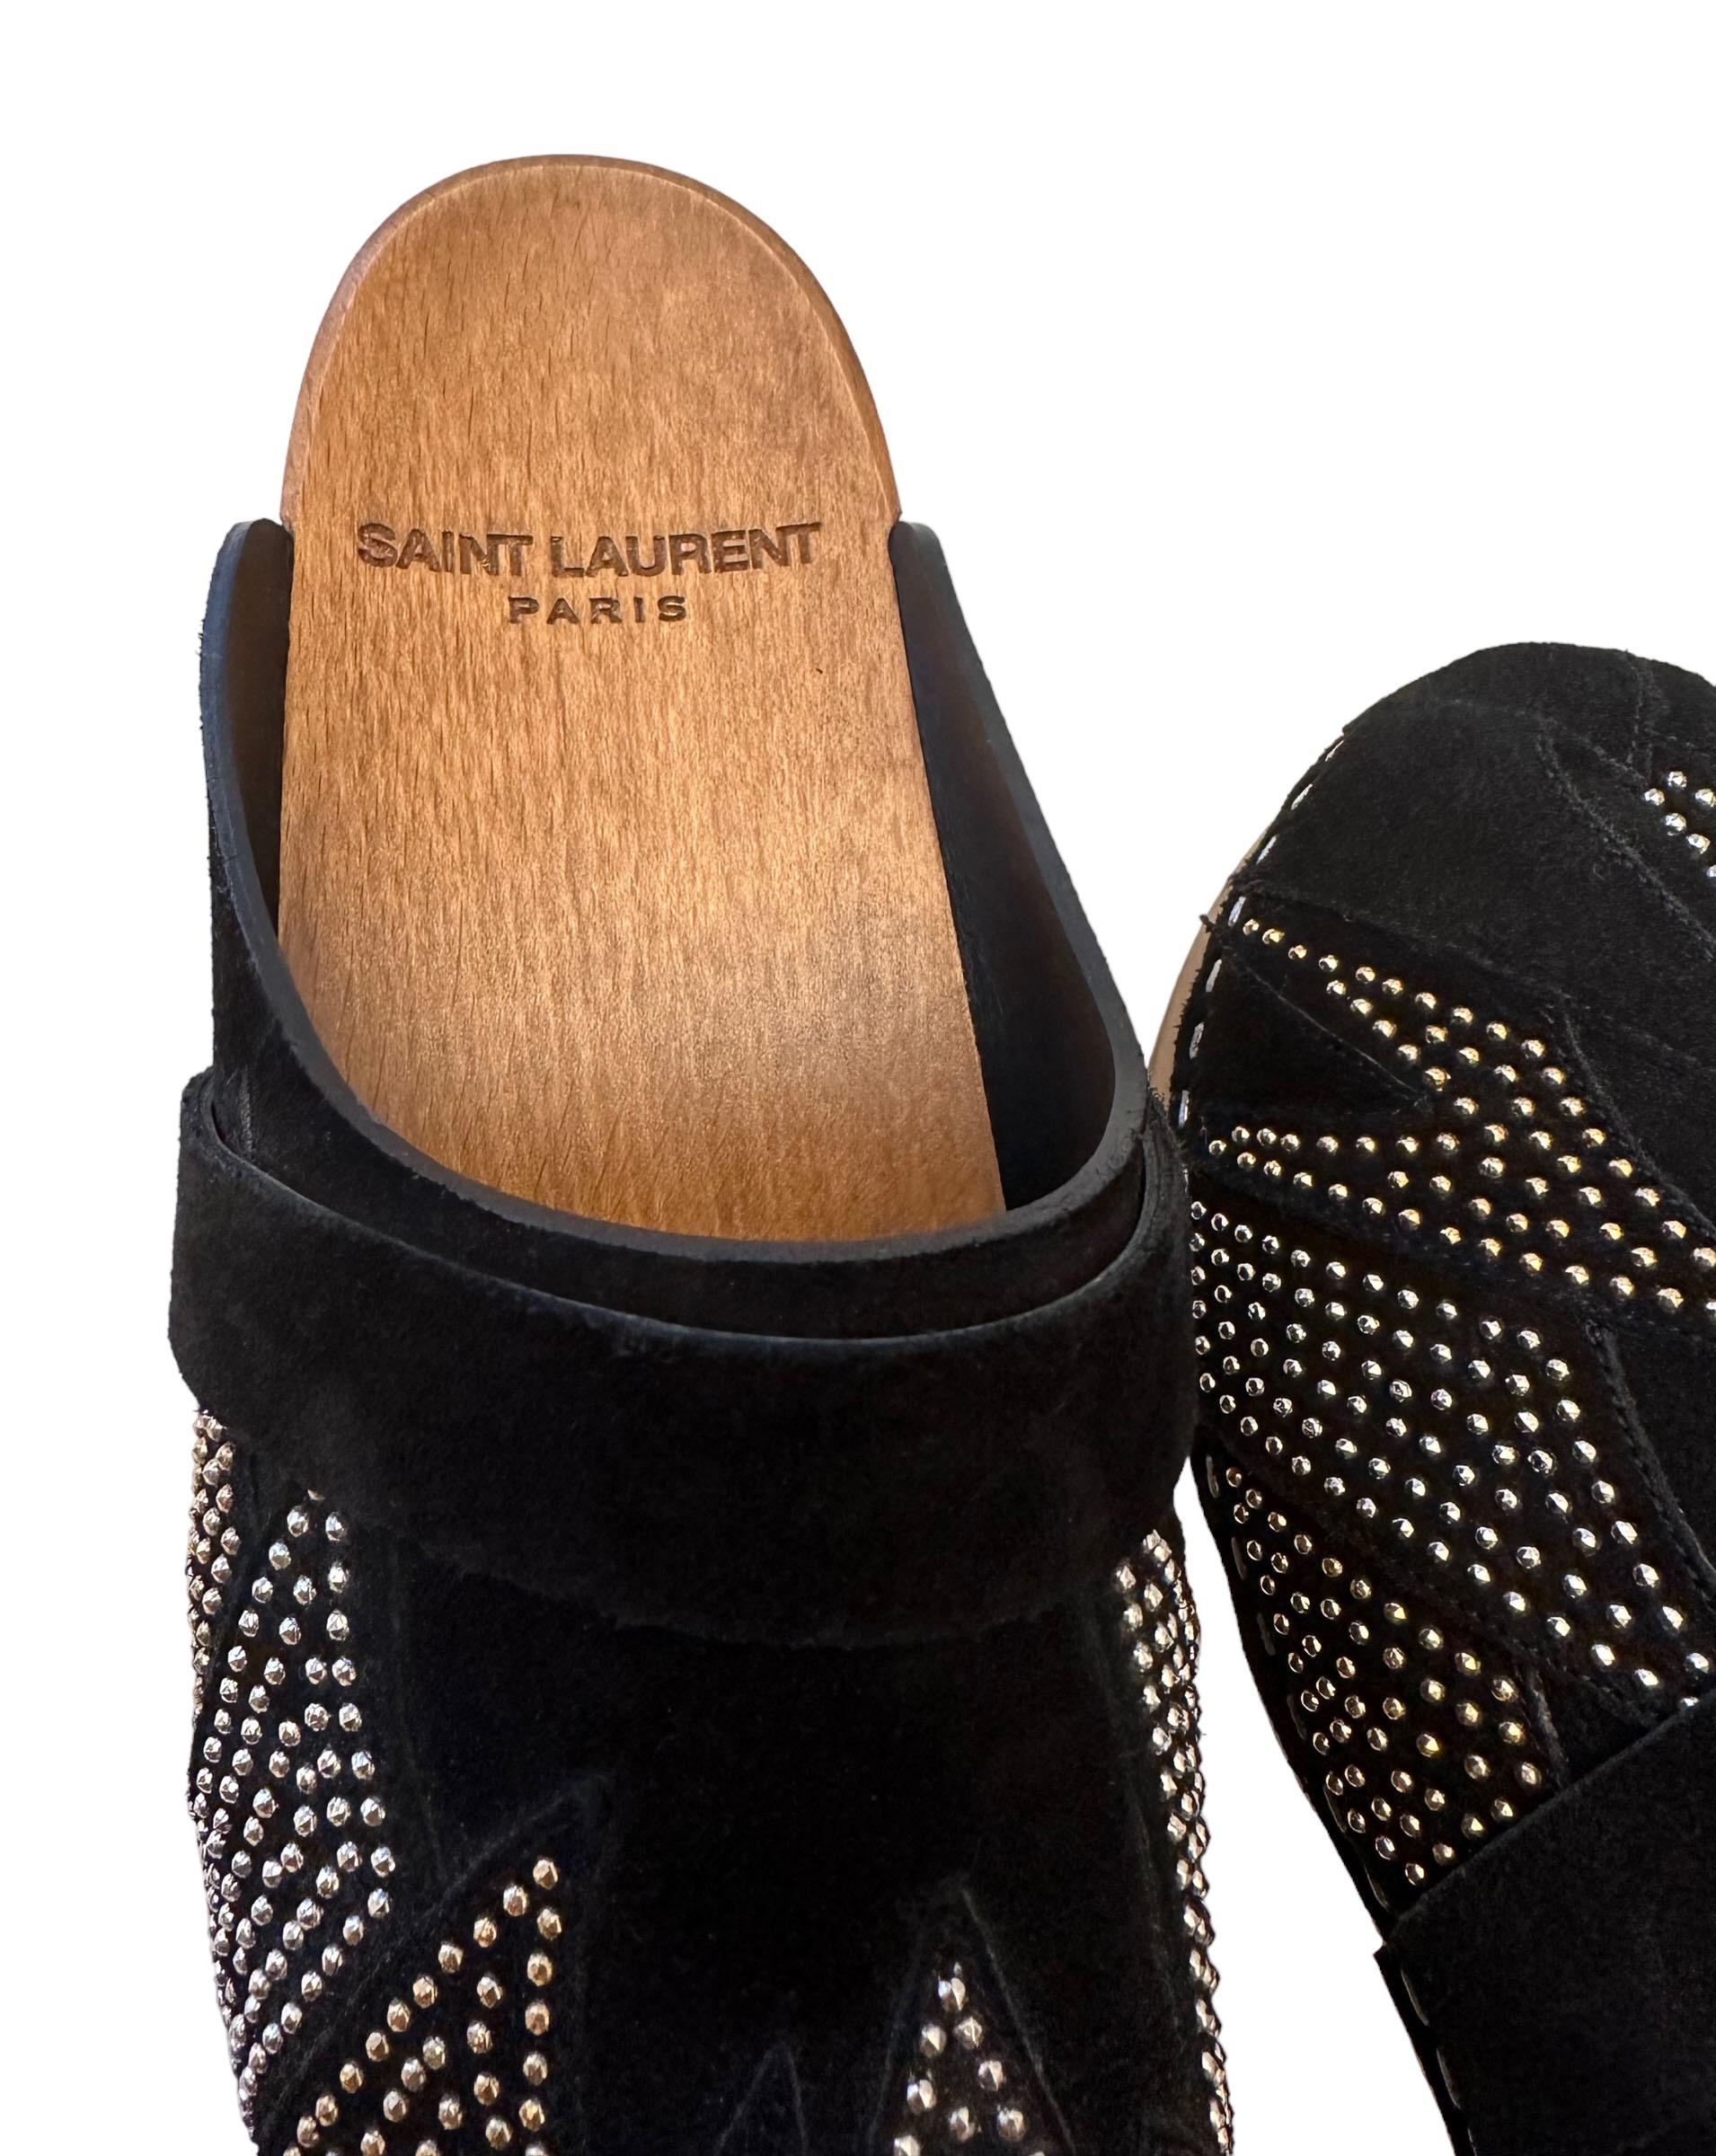 Saint Laurent Black Suede Clogs with Studs 2